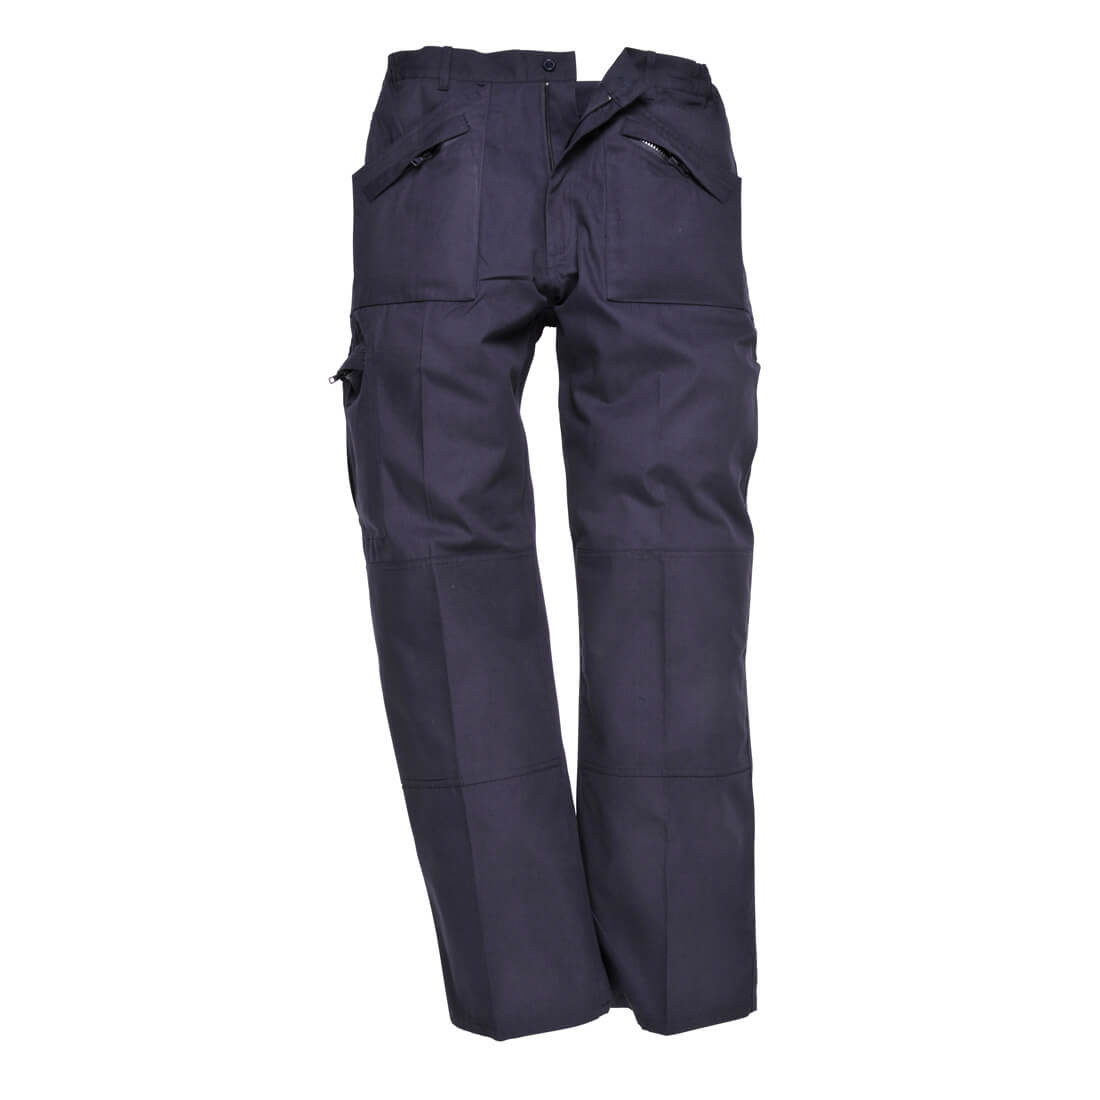 Pantaloni Classic Action - finitura in Texpel - Abbigliamento di protezione